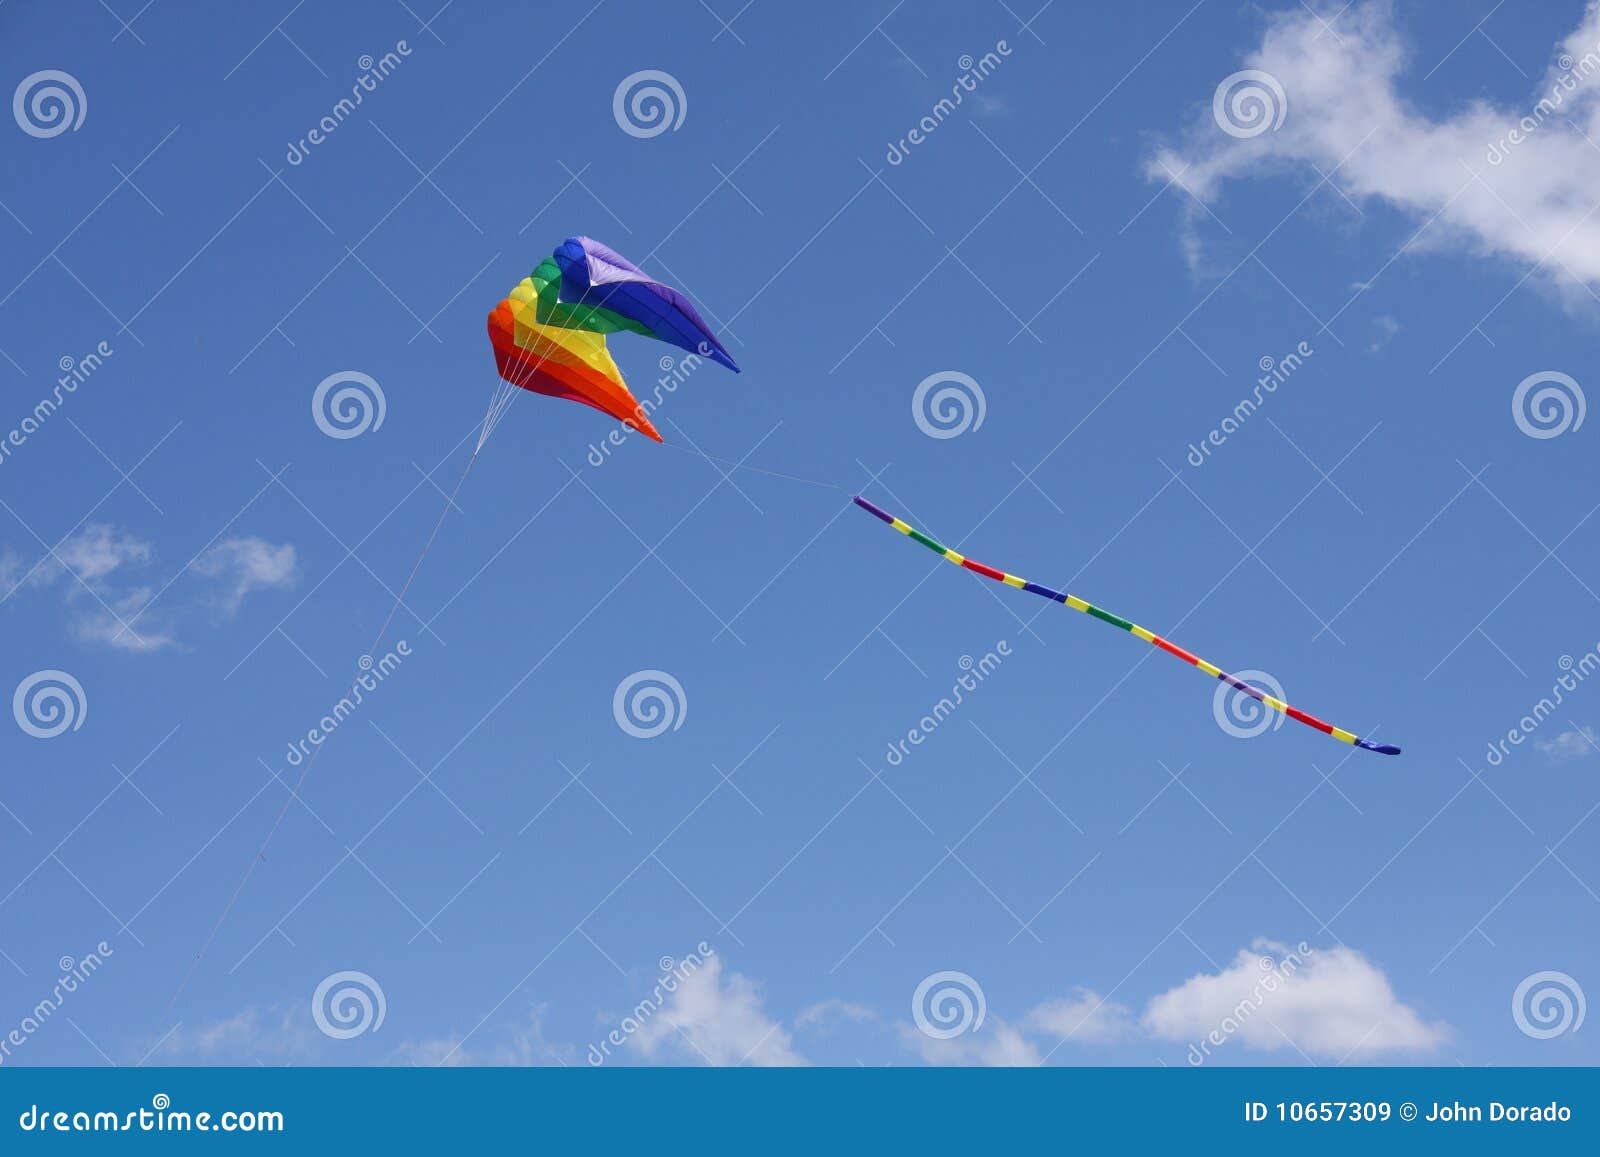 colorful parasail kite